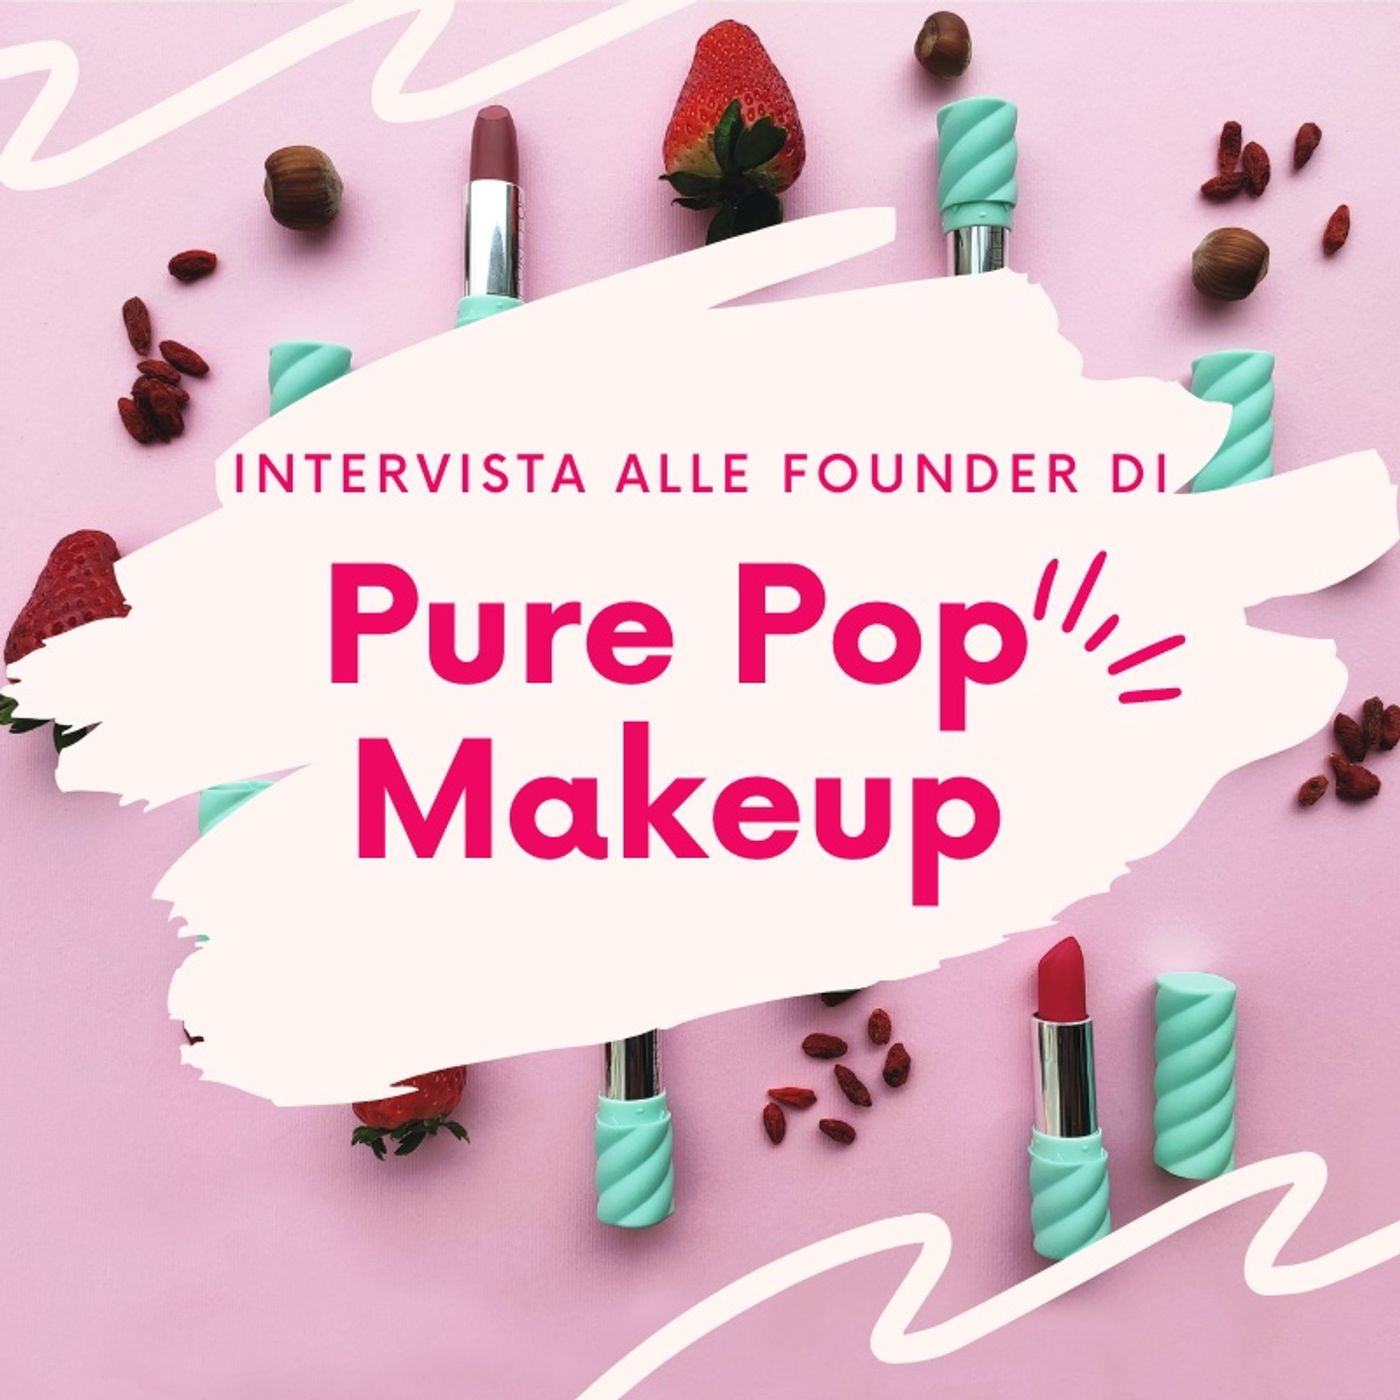 Ep. 29. I Rossetti dal cuore fruttato 🍊- Intervista alle founder di Pure Pop Makeup.